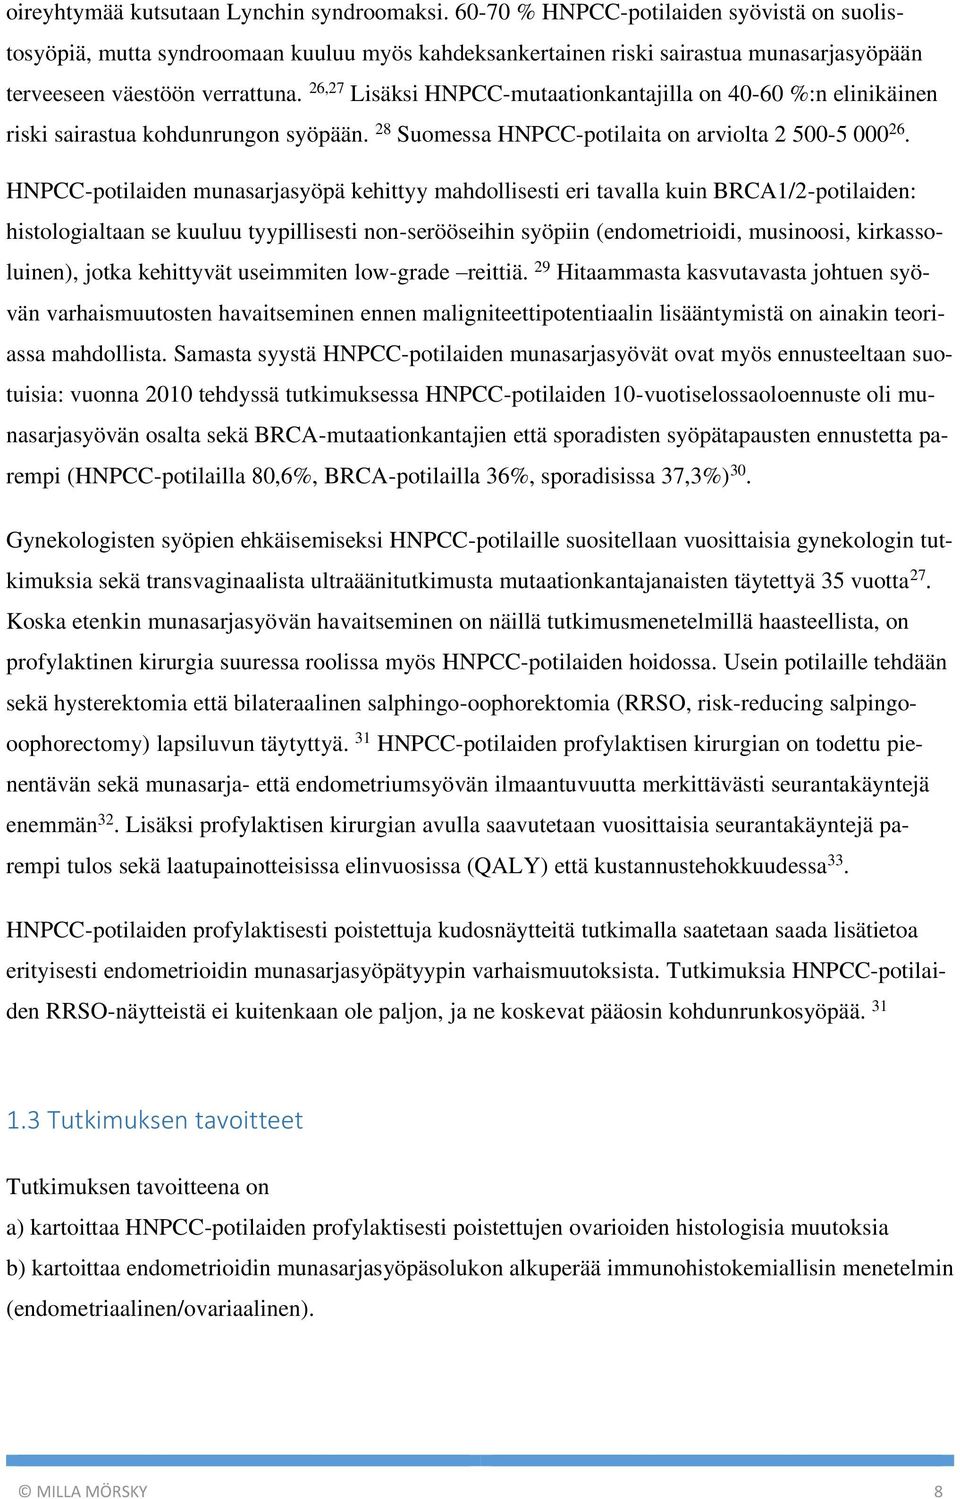 26,27 Lisäksi HNPCC-mutaationkantajilla on 40-60 %:n elinikäinen riski sairastua kohdunrungon syöpään. 28 Suomessa HNPCC-potilaita on arviolta 2 500-5 000 26.